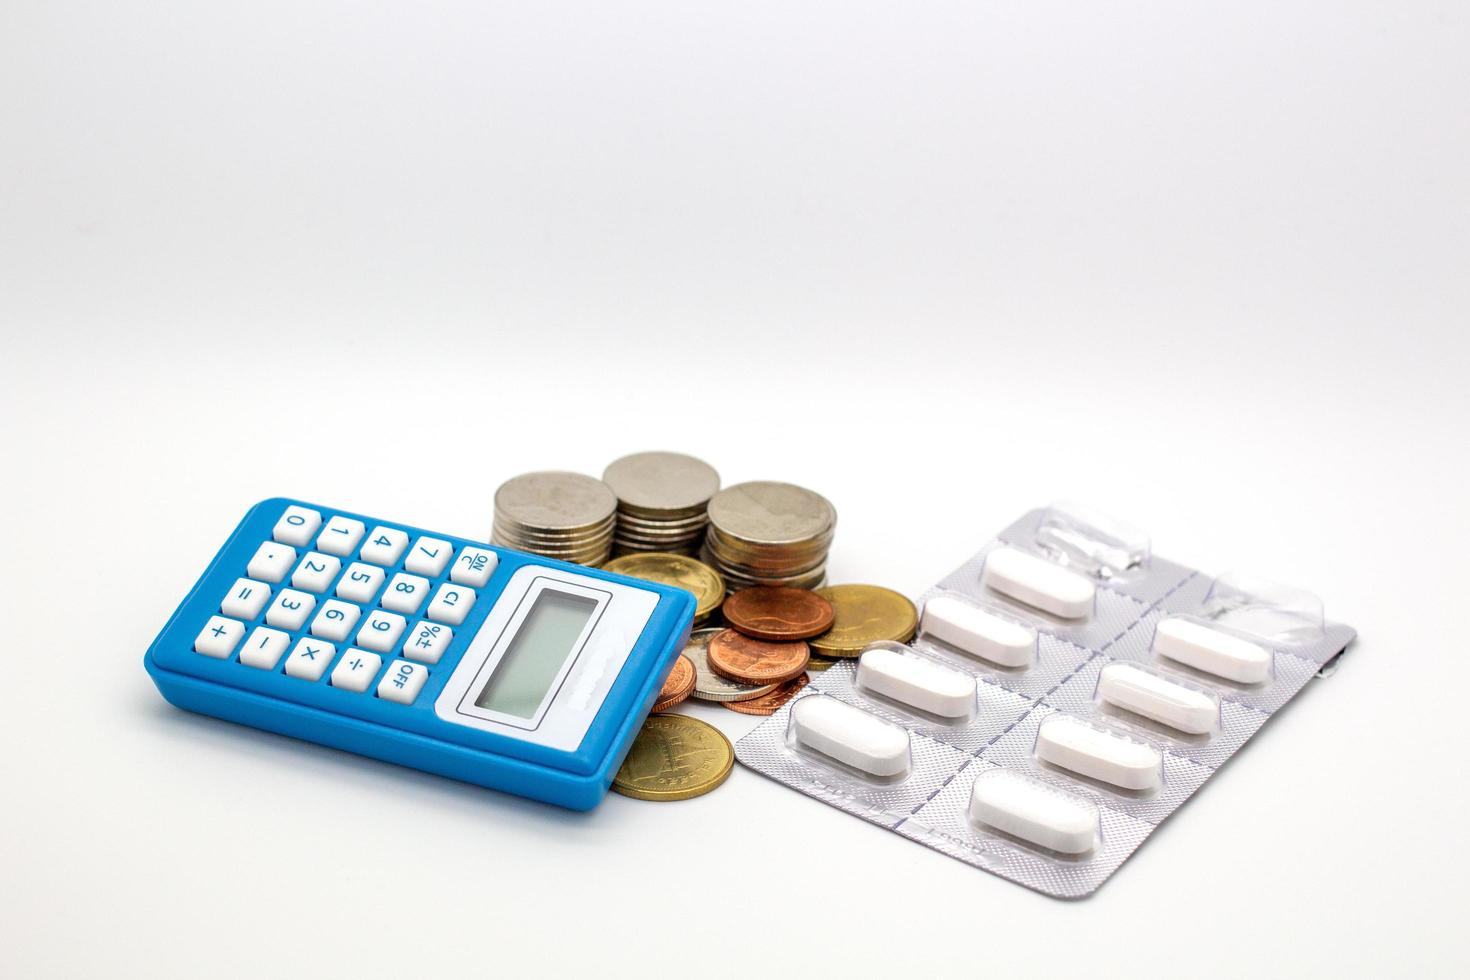 pièces de monnaie en baht thaïlandais, ensemble de capsules de médicaments et calculatrice bleue photo